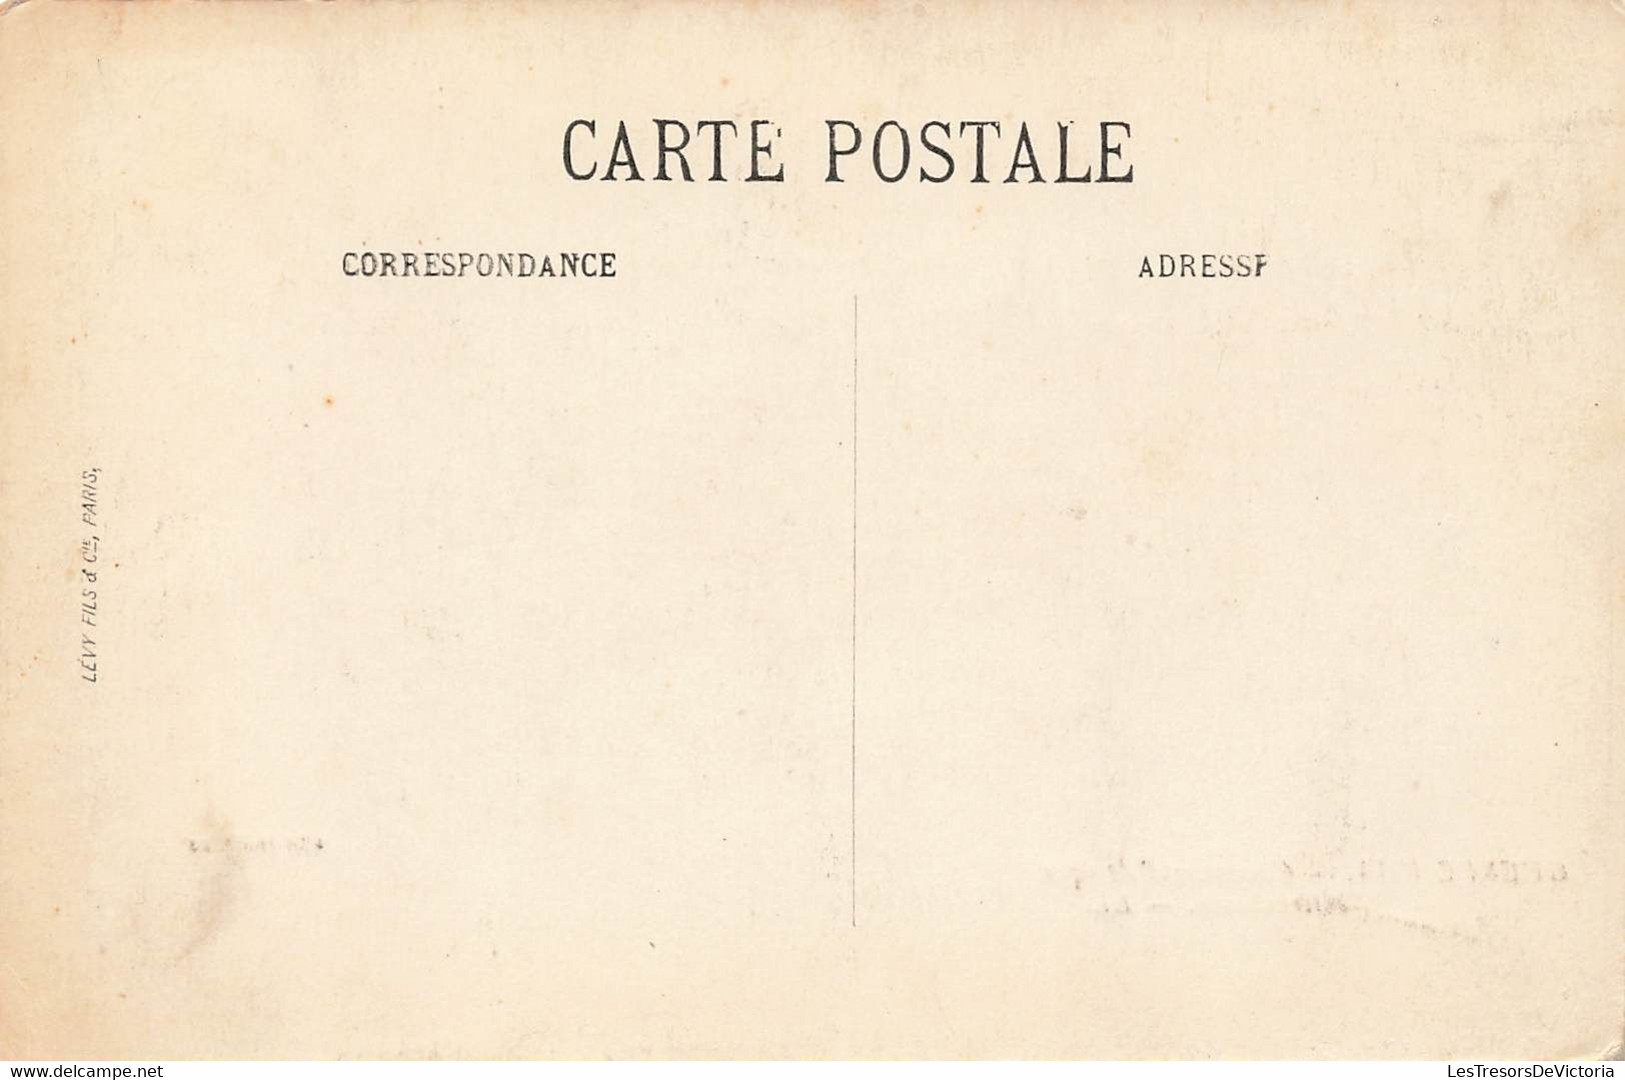 CPA Stereoscopique - Guerre 1914 - Chasseurs D'afrique Mitrailleurs - LL - - Stereoskopie